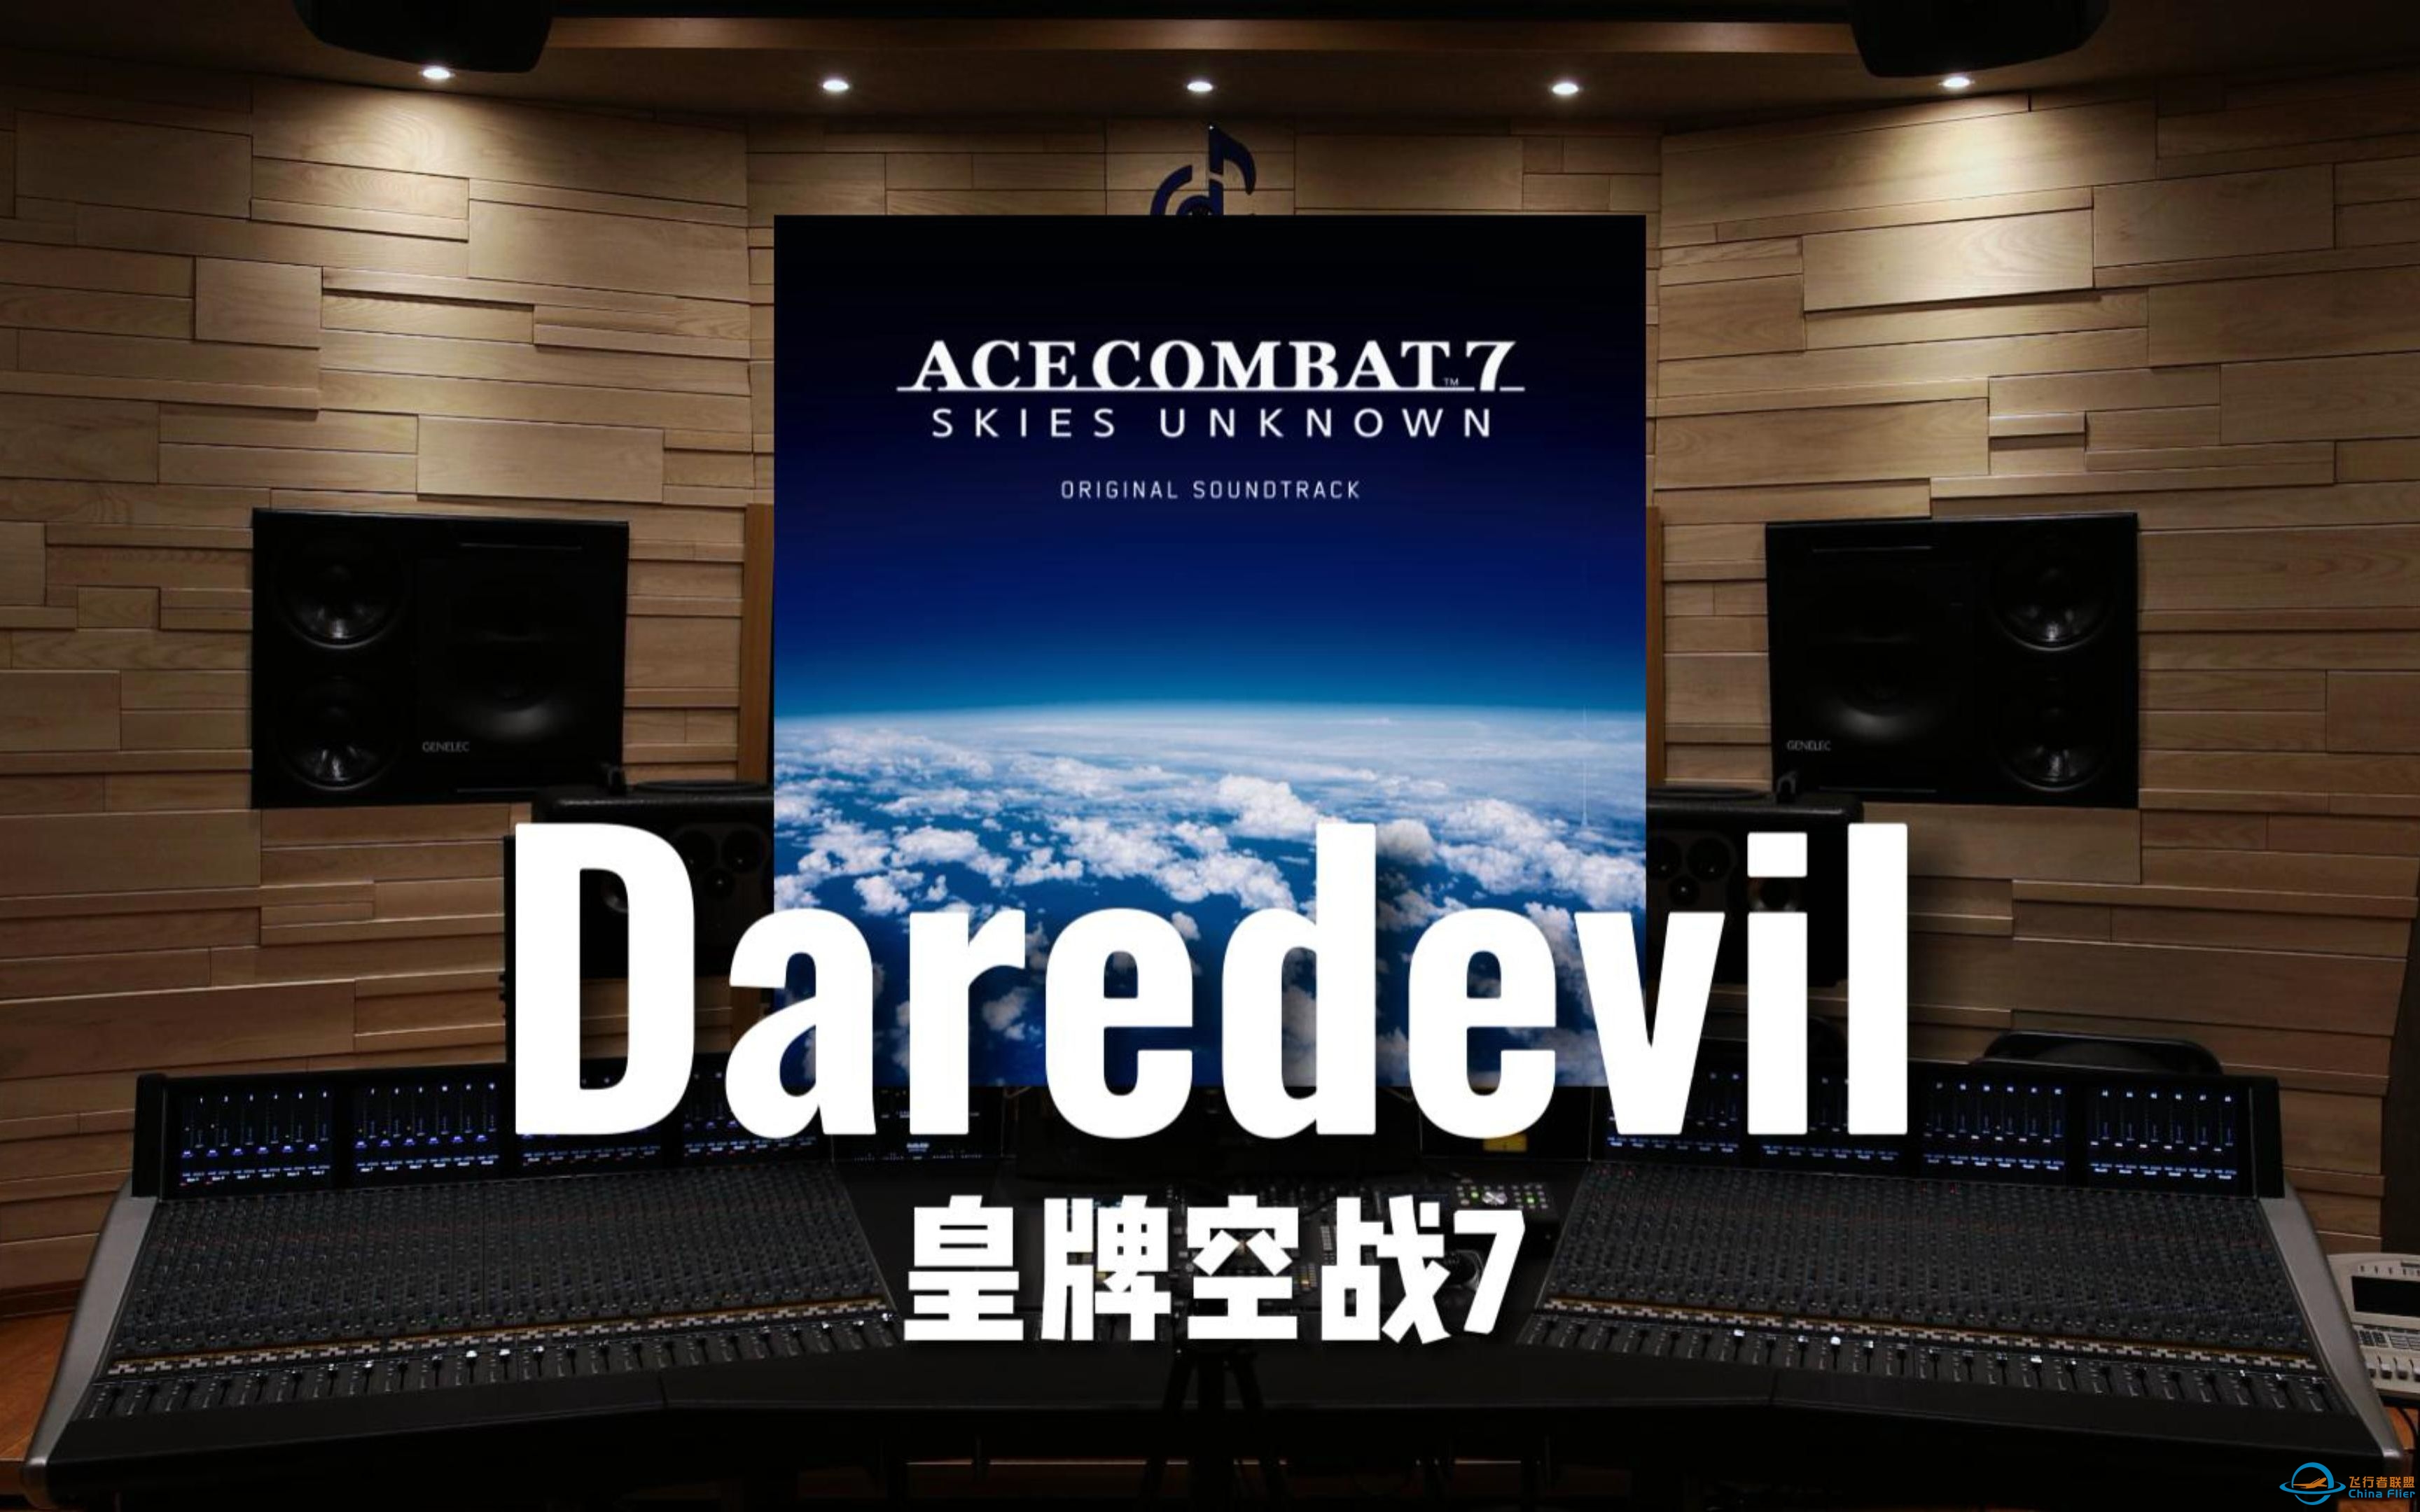 【皇牌空战7】百万级录音棚听《Daredevil》游戏《皇牌空战7 未知空域》OST【Hi-Res】-1774 